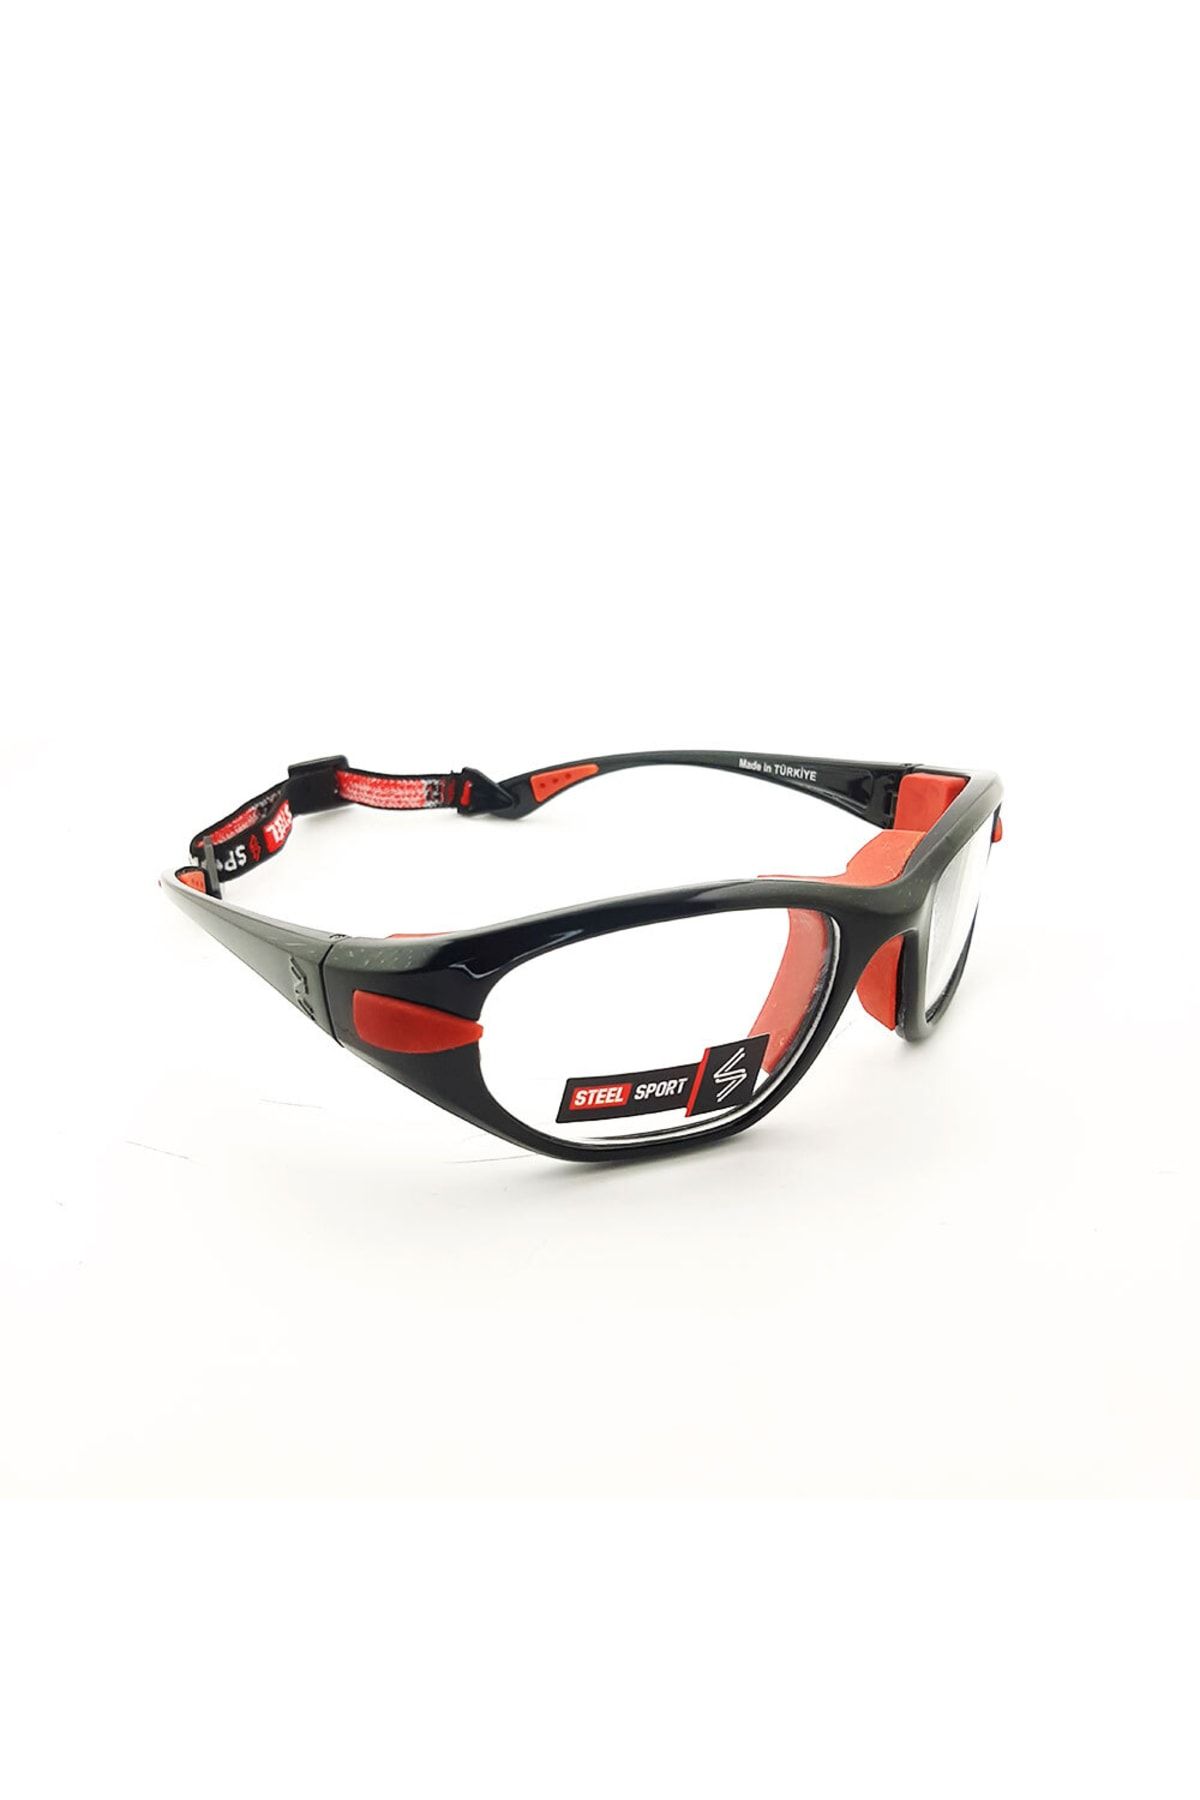 Genel Markalar Maxima Ss fl C13 Parlak Metalik Siyah-kırmızıped 20+yaş numaralı Olabilen Sporcu Gözlüğü